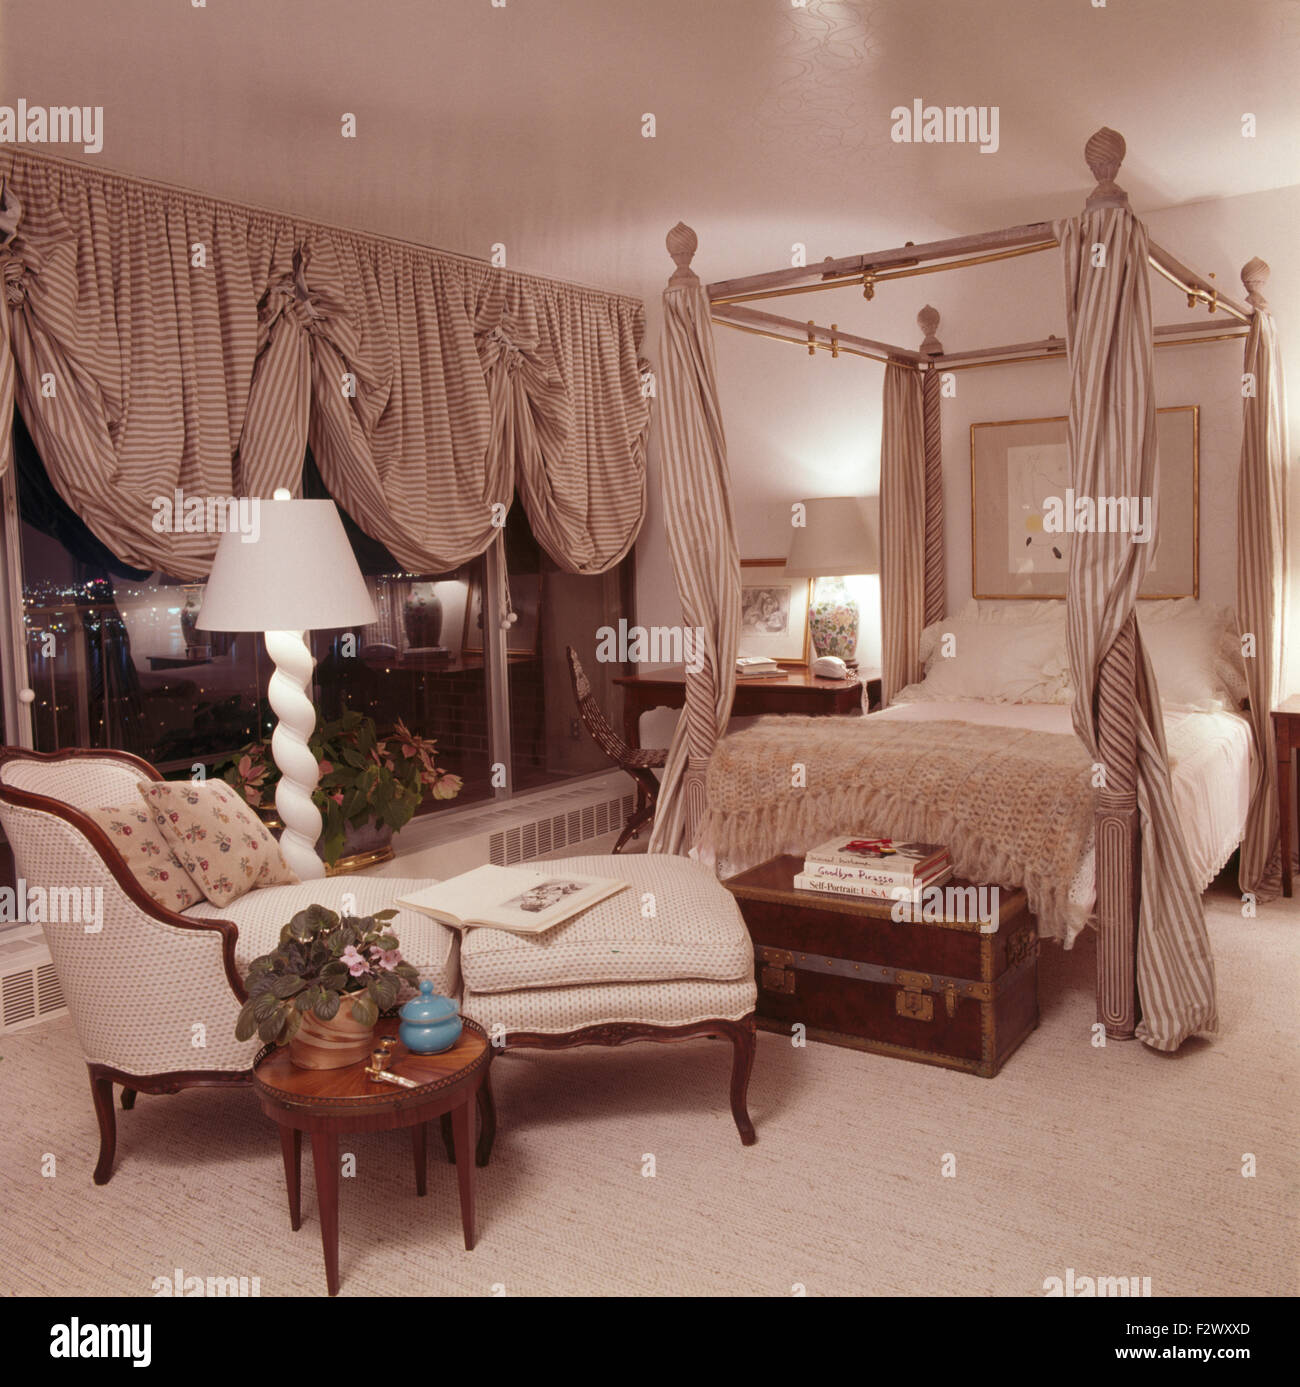 Striped festone persiane delle finestre in opulento camera da letto degli anni ottanta con abbinamento di tende a strisce su un letto a baldacchino Foto Stock